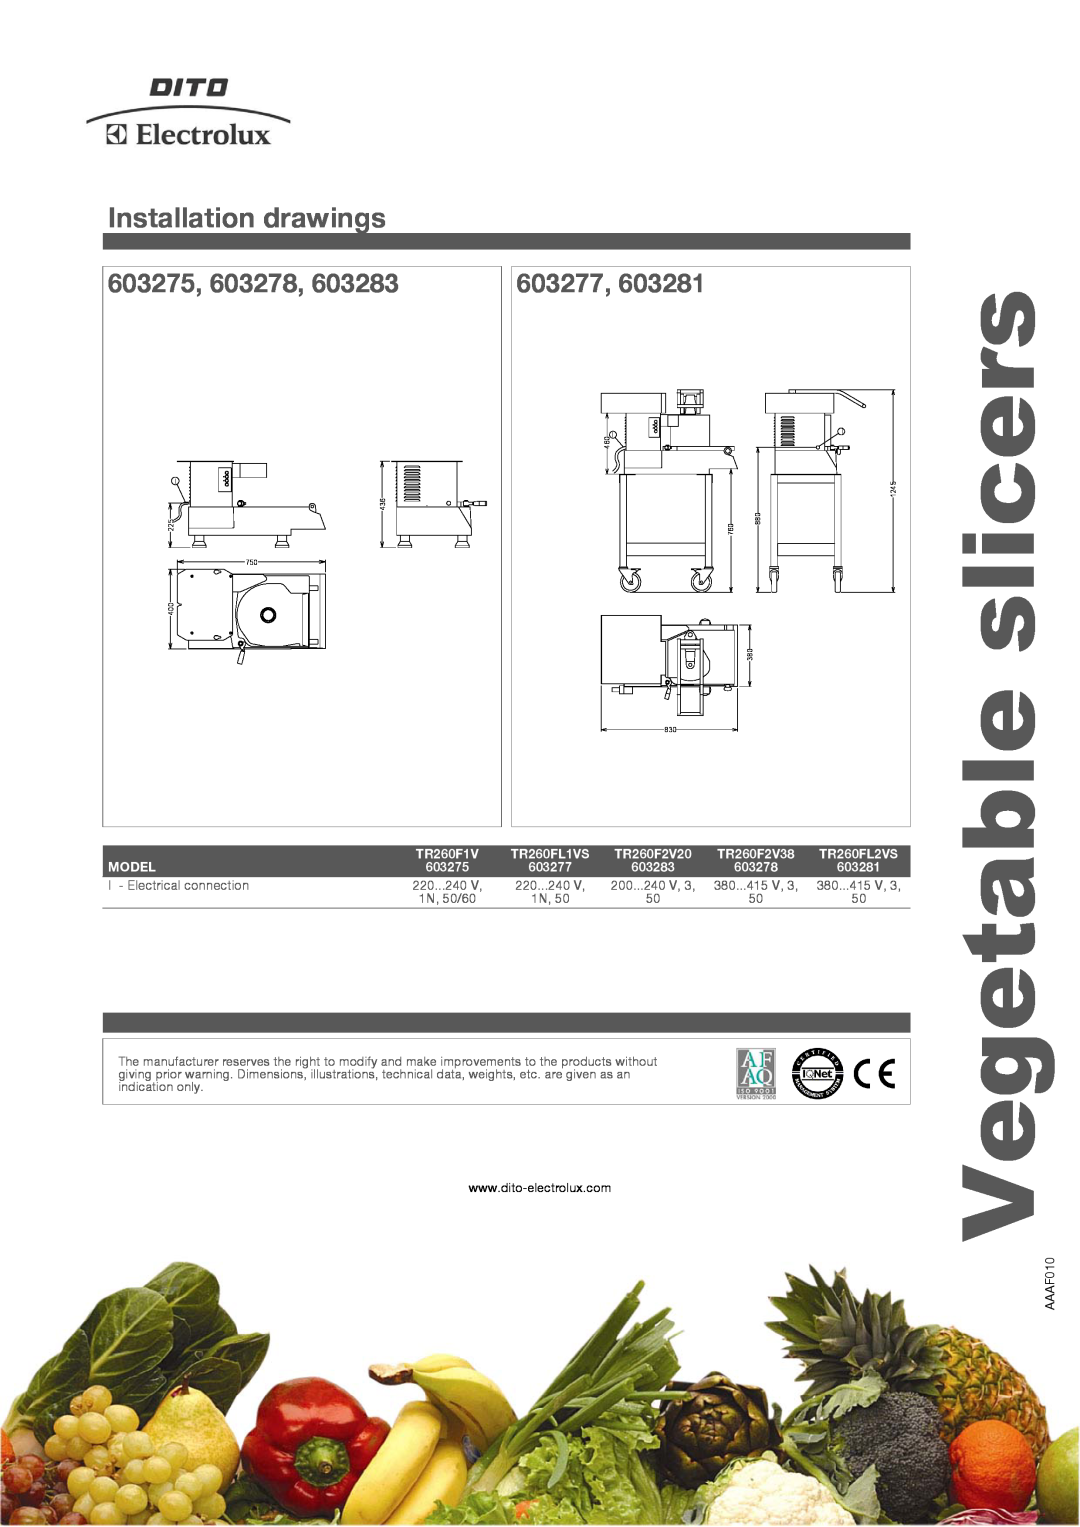 Electrolux TR260FL1VS, TR260F2V20 Vegetable, Installation drawings, 603275, 603278, 603277, slicers, 603283, 603281 